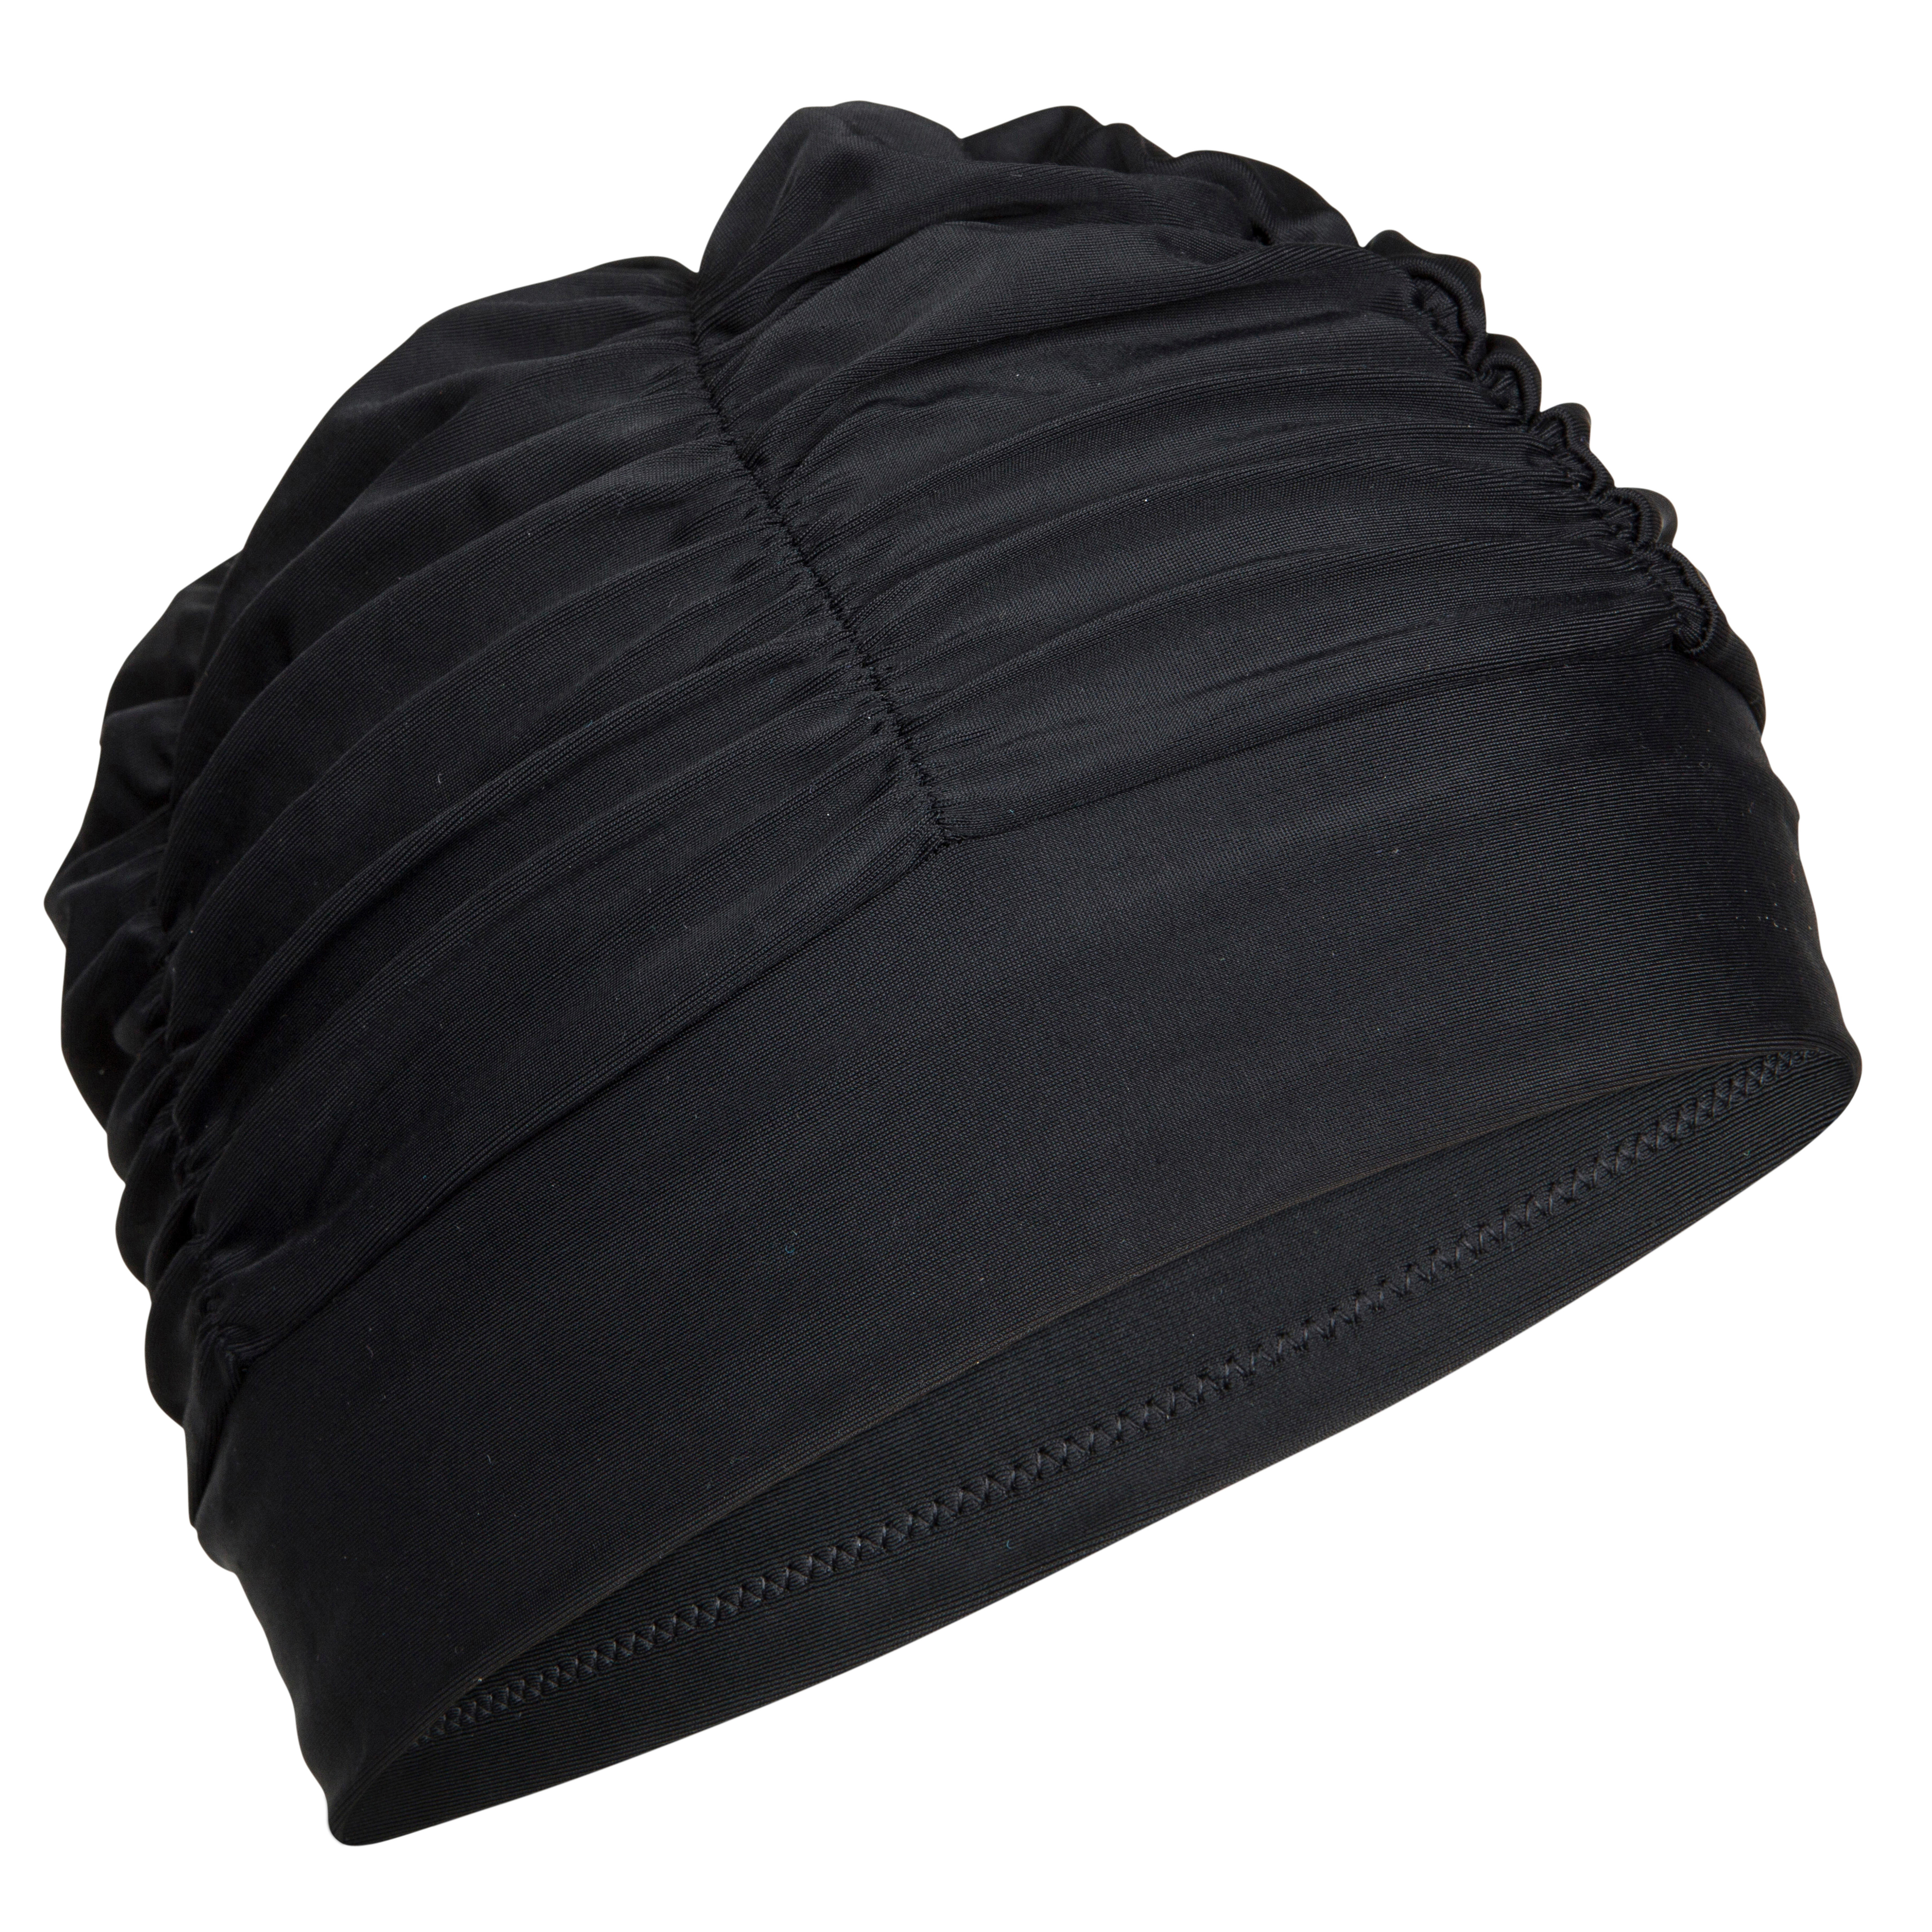 Cască de înot păr voluminos Material Textil Negru Cască